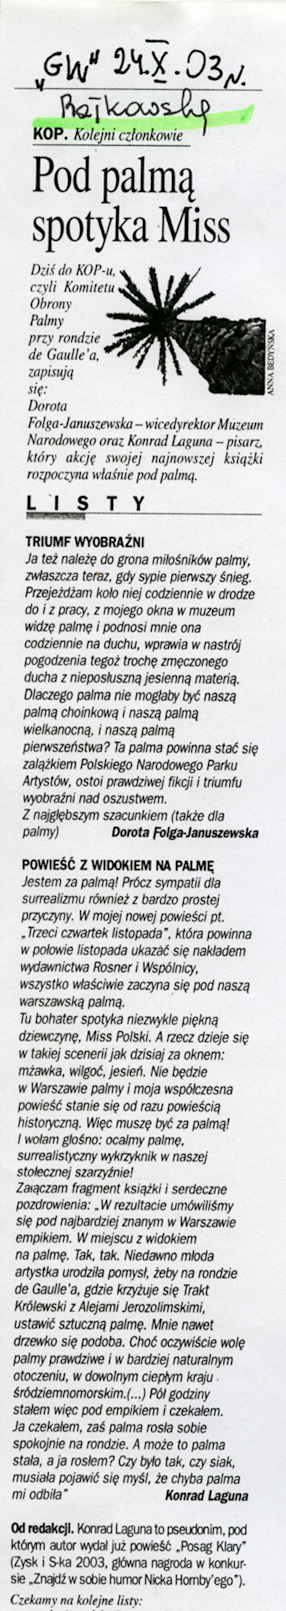 Pod palmą spotyka Miss; Listy, „Gazeta Wyborcza“, 24.10.2003. 